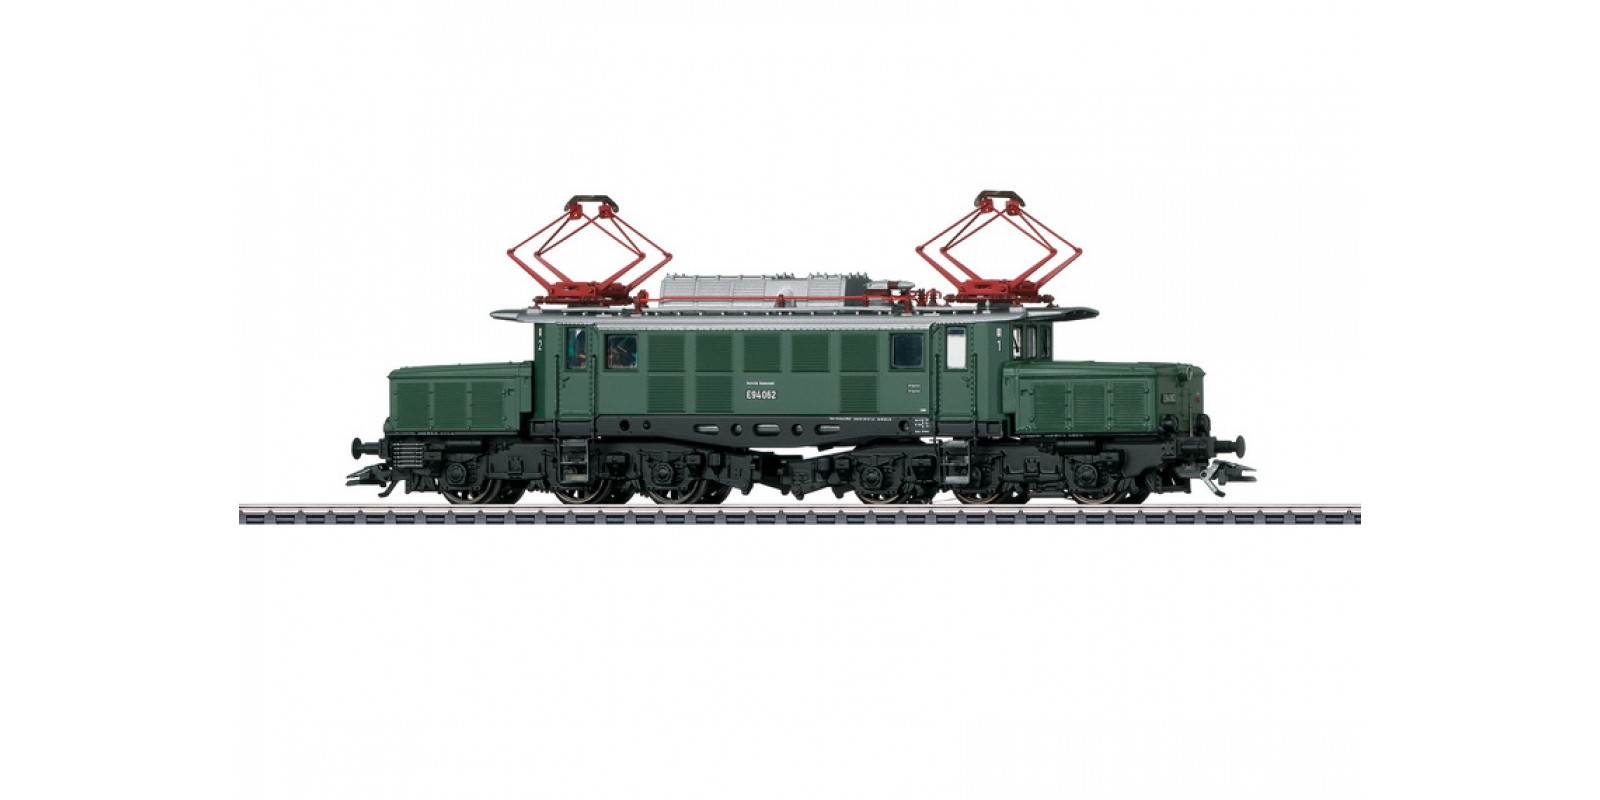 39227 Class E 94 Electric Locomotive